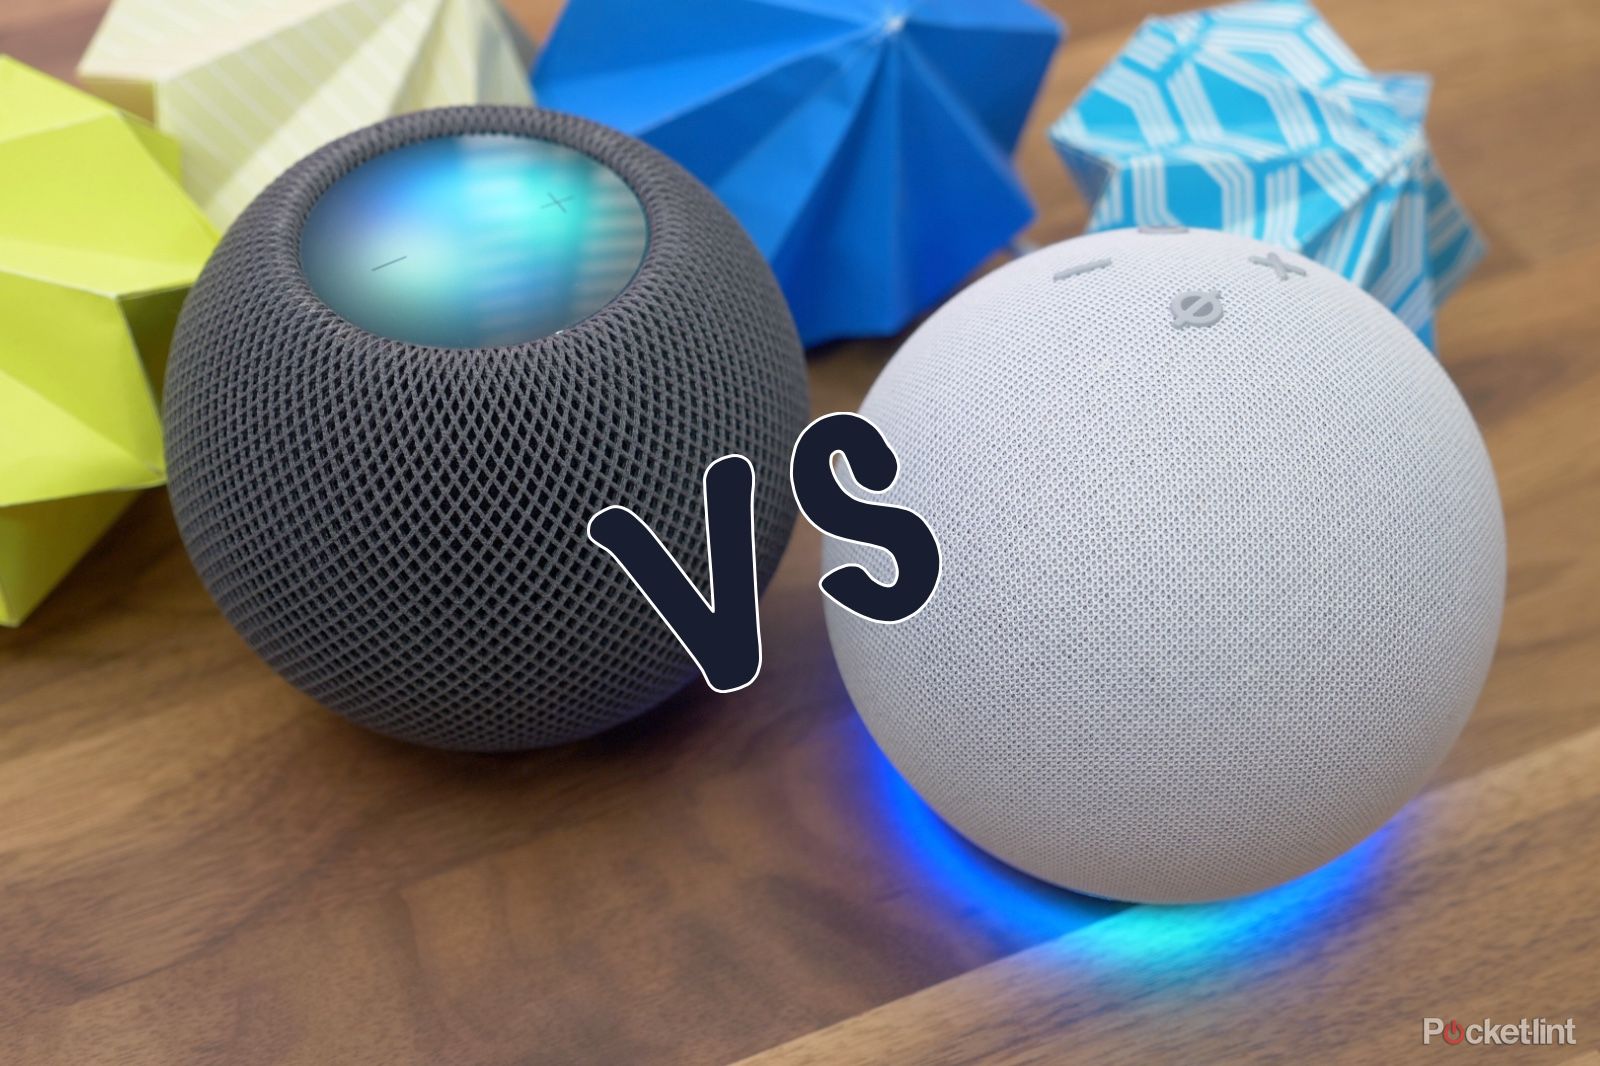 Homepod Mini vs. Echo Dot: Which Is Better?